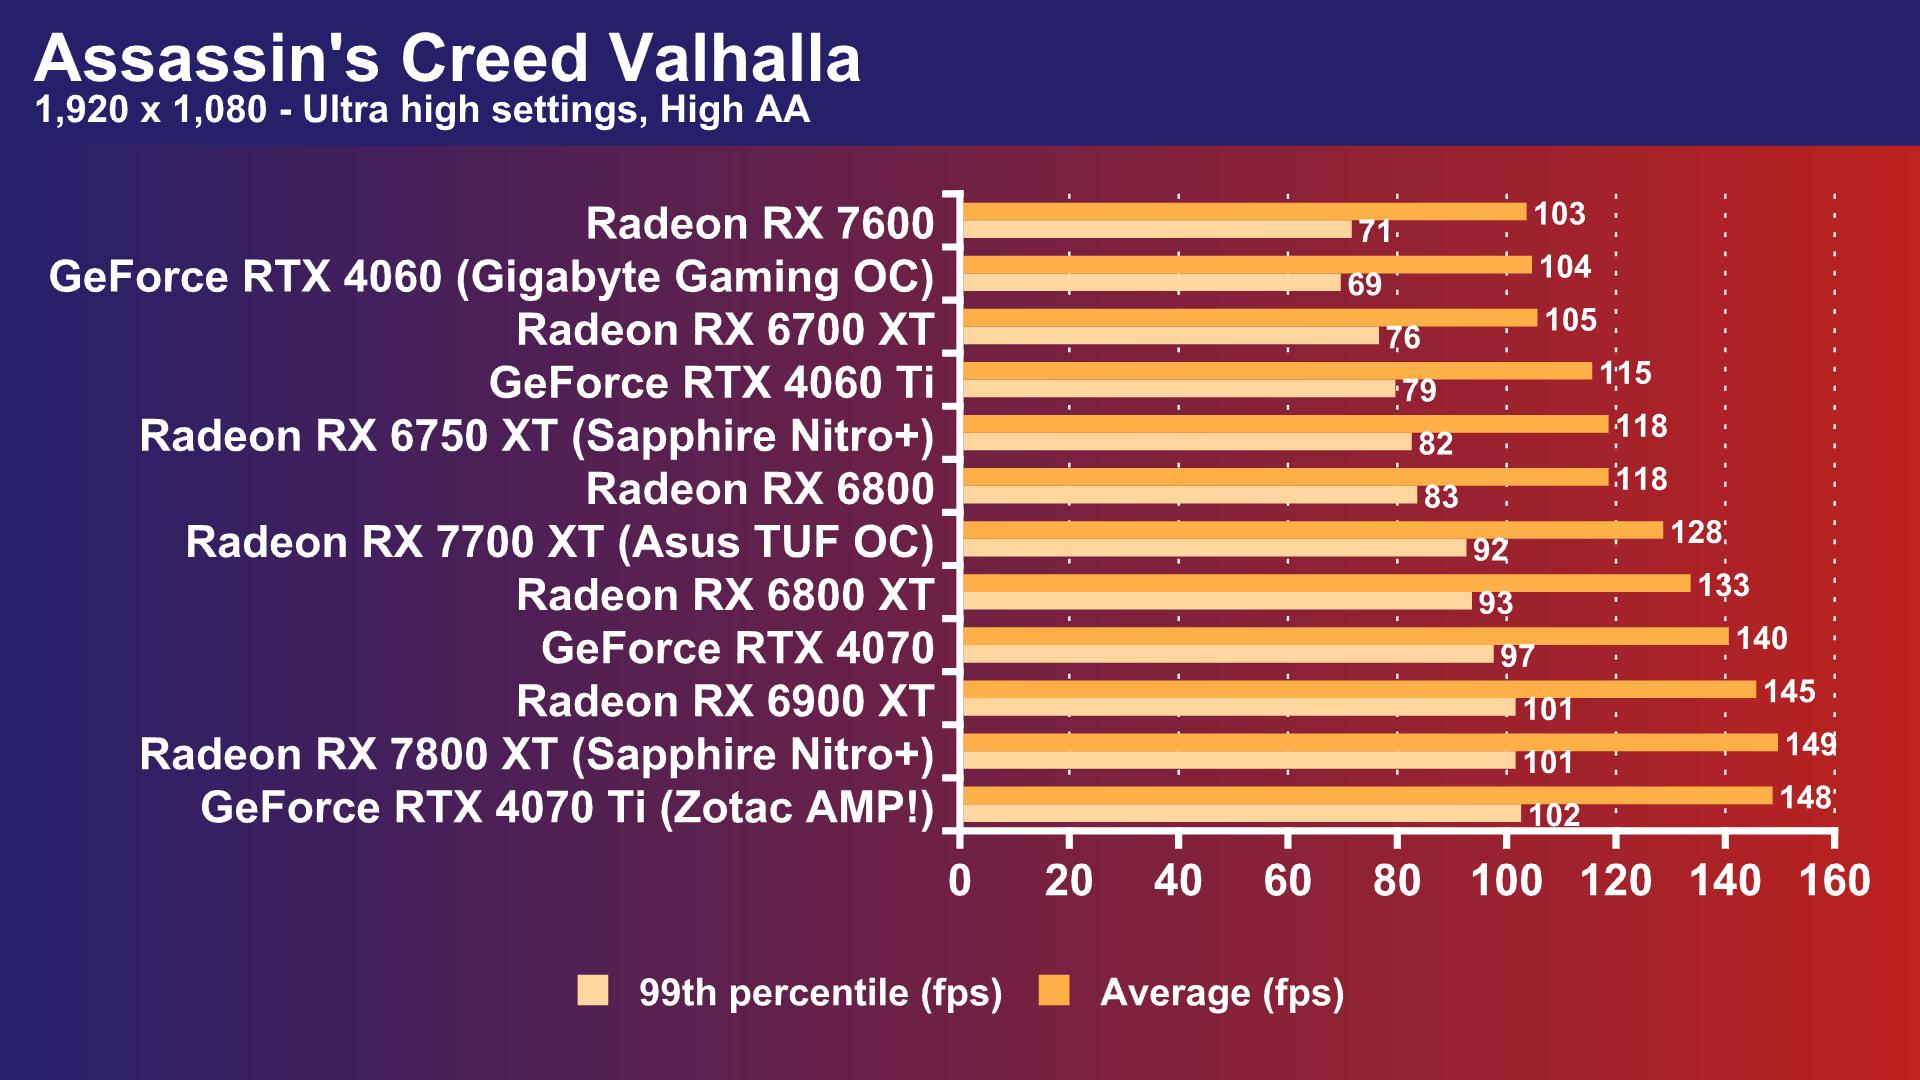 AMD RX 7700 XT vs RX 6800 vs RTX 3070 Ti